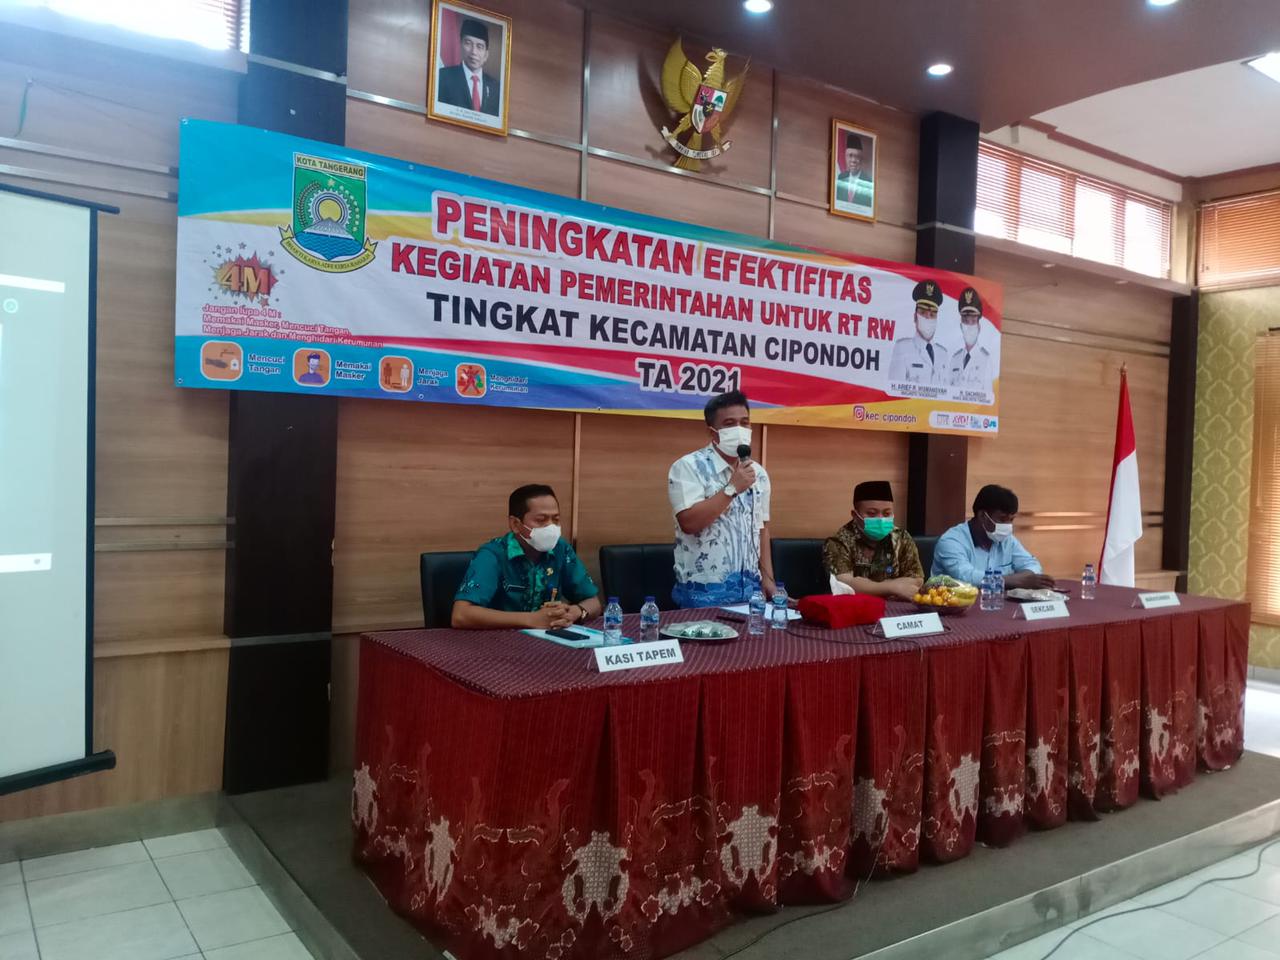 Caption	Create Date	Action 	Pembinaan Peningkatan Efektivitas Kegiatan Pemerintah untuk RT dan RW se-Kecamatan Cipondoh, Kota Tangerang.